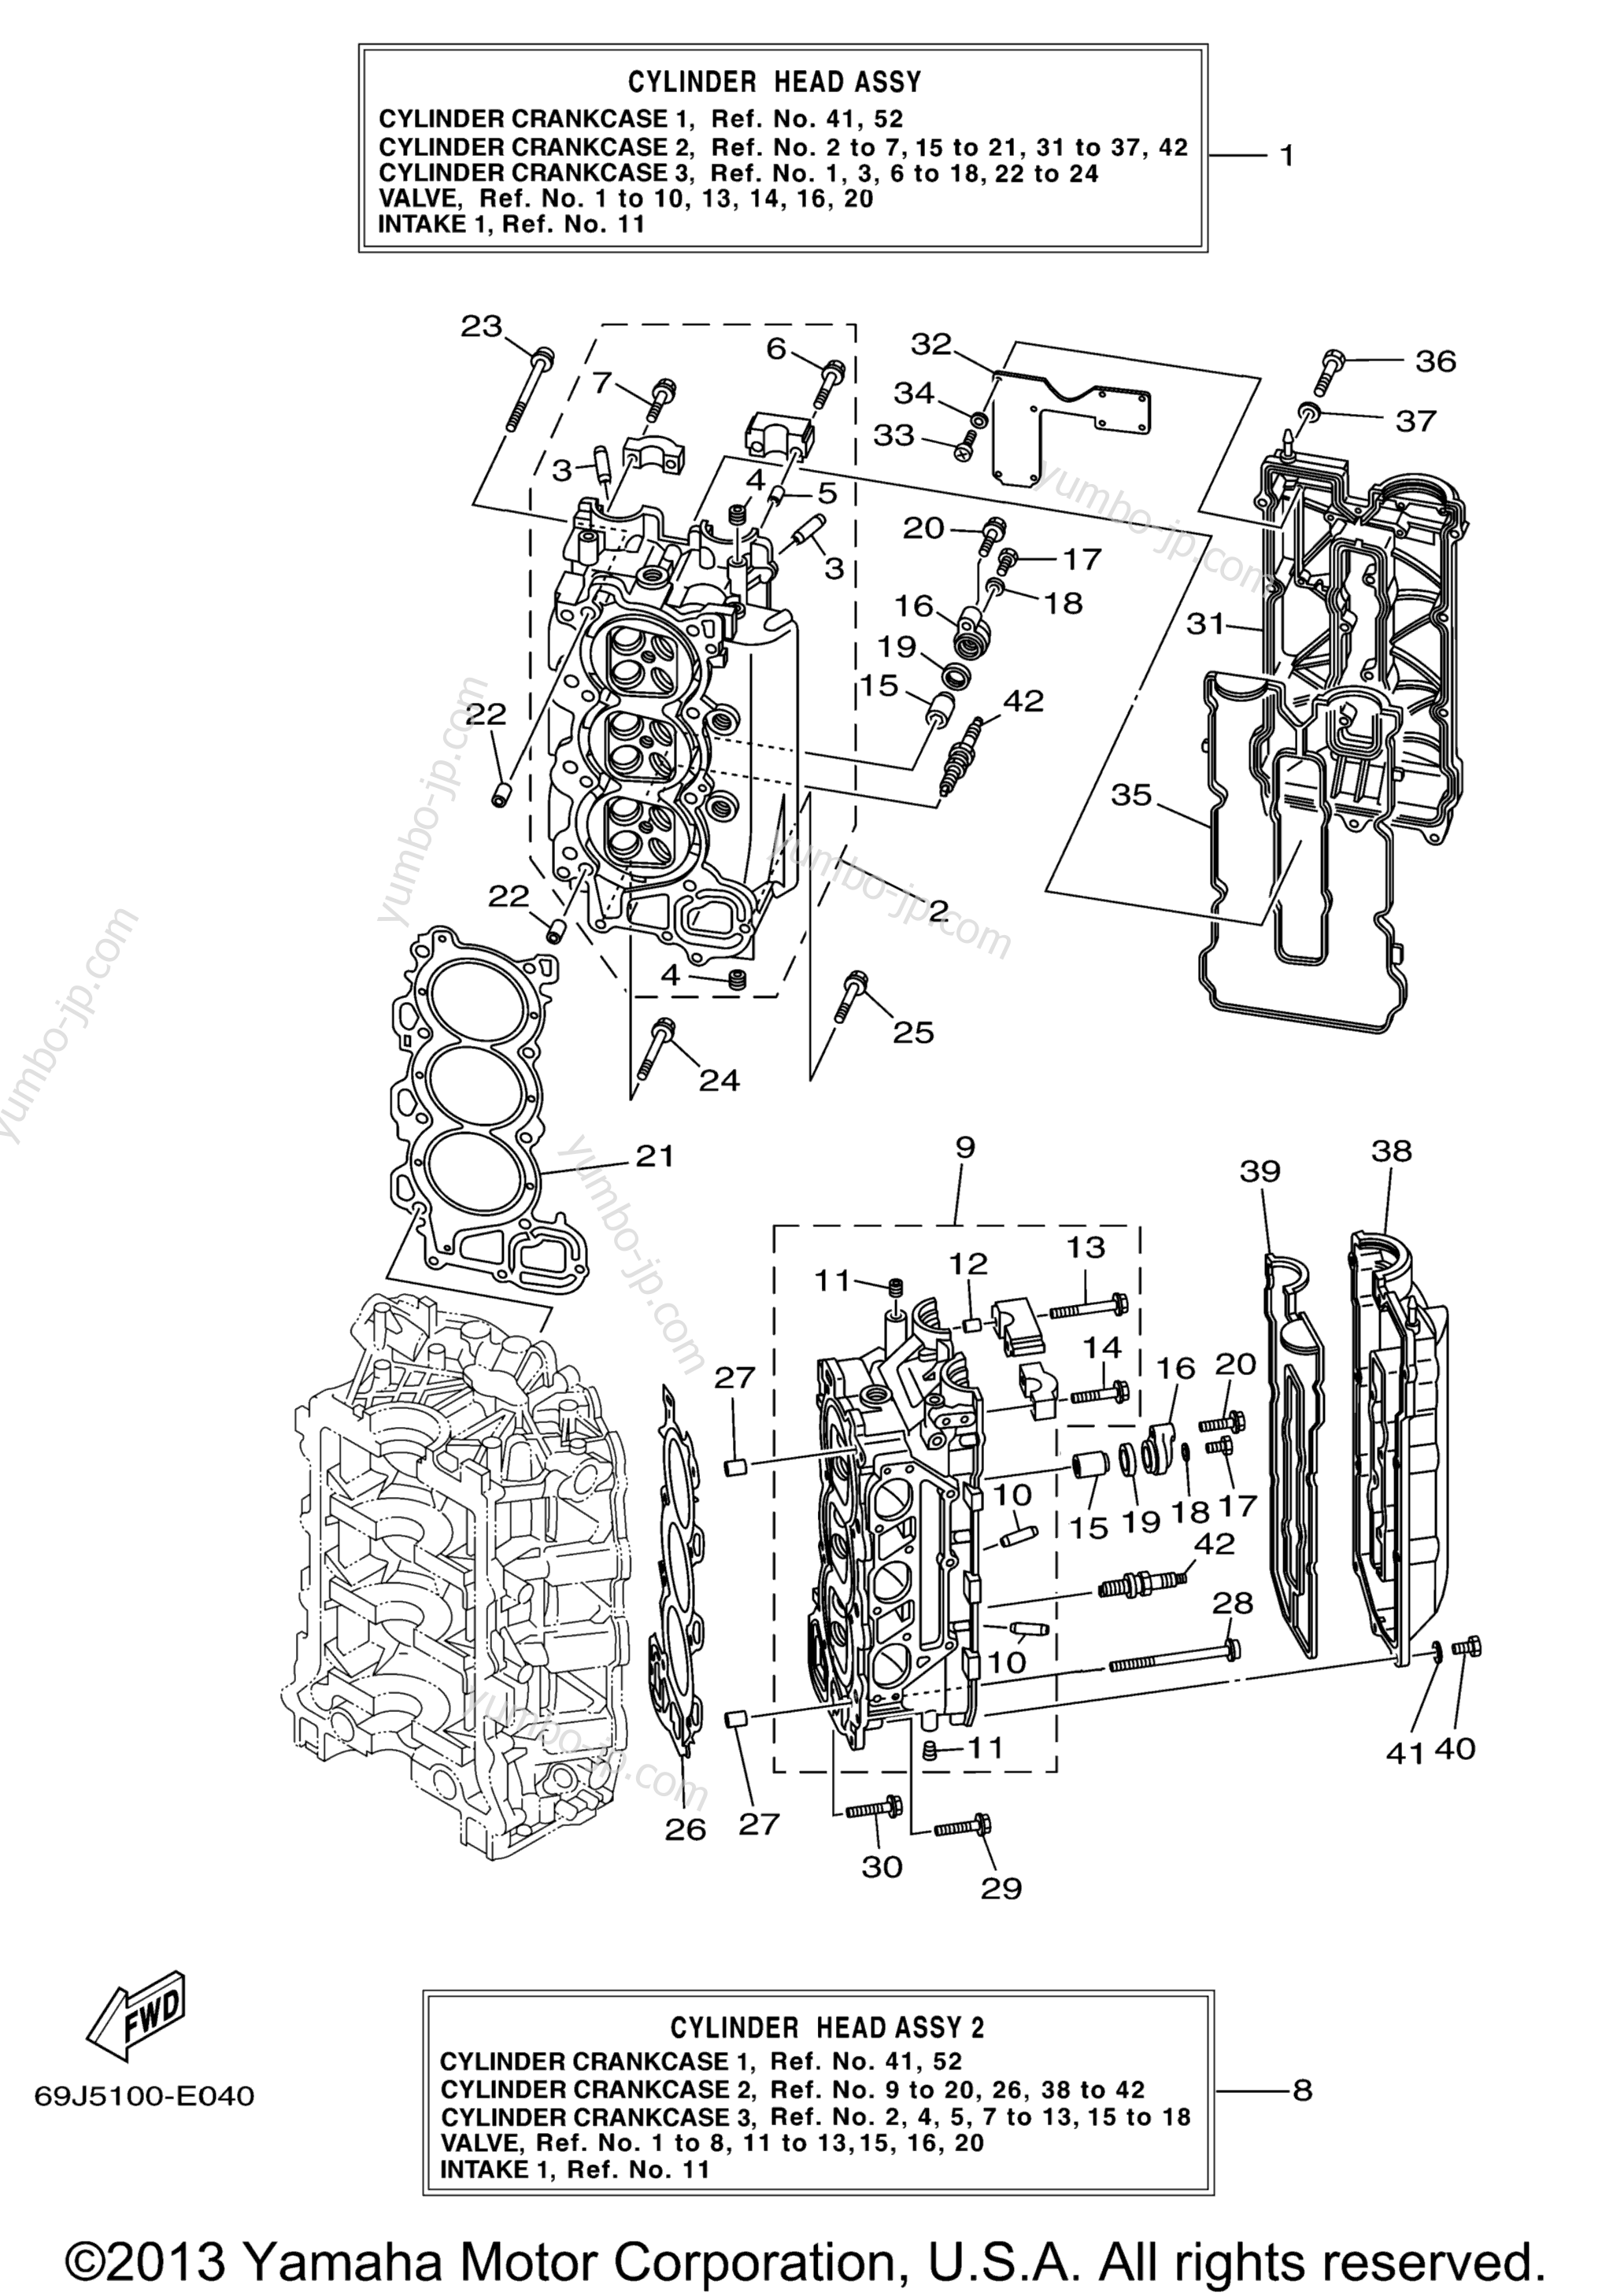 Cylinder Crankcase 2 для лодочных моторов YAMAHA F225TXR (0405) 69J-1021983~1027874 LF225TXR_TUR 69K-1006907~10008 2006 г.